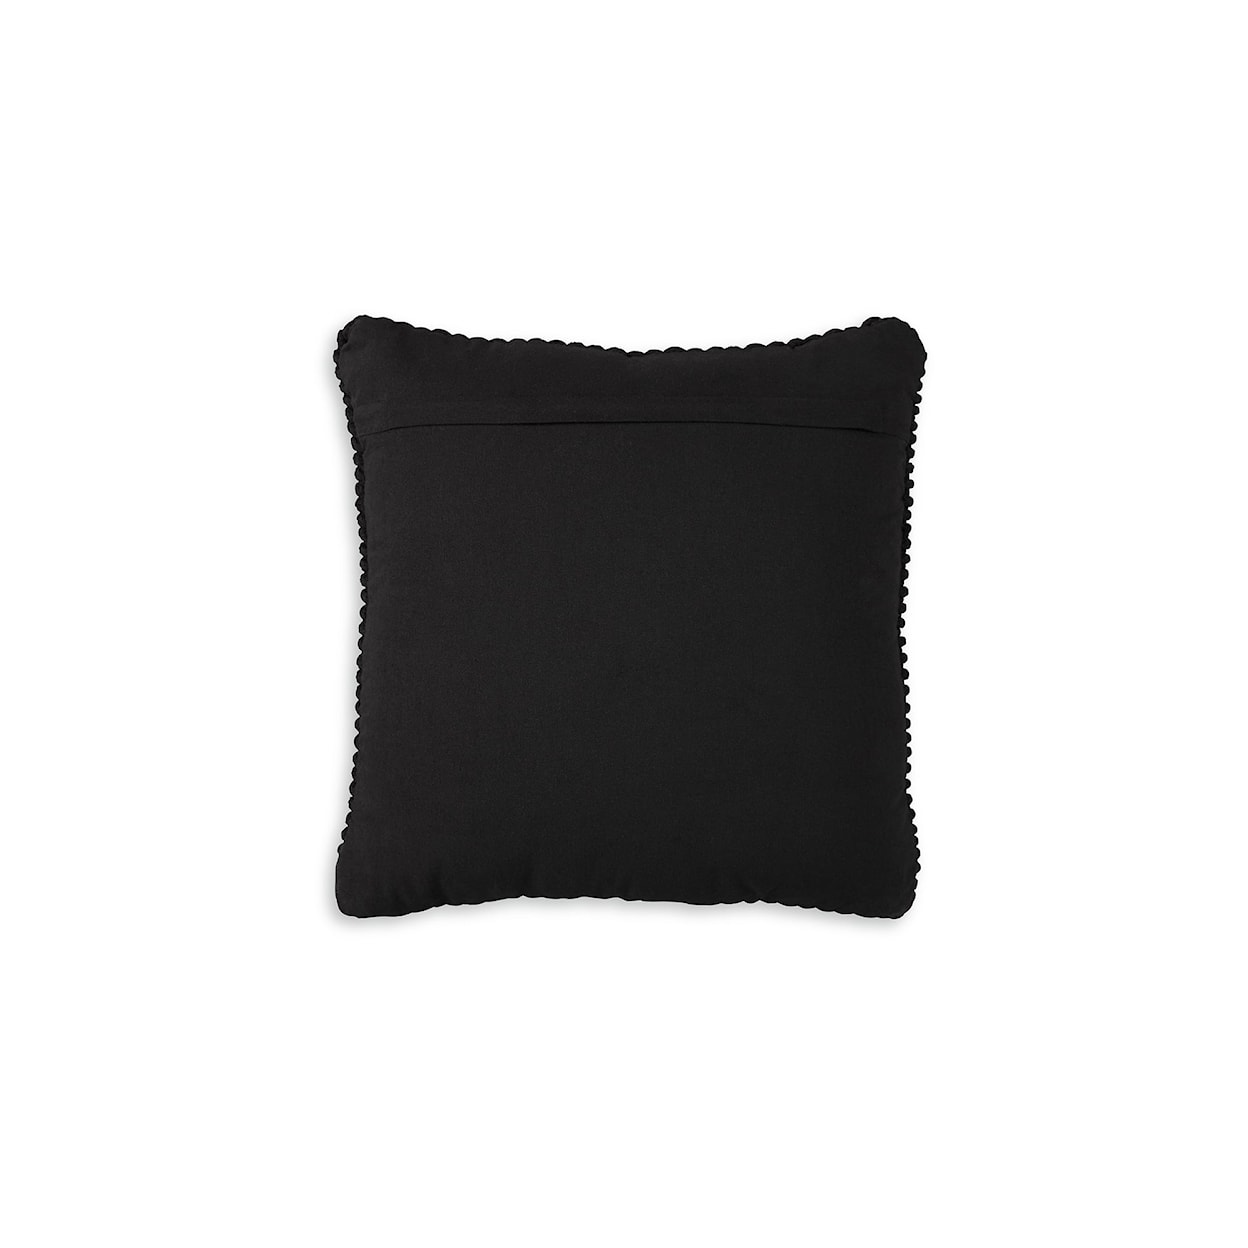 Benchcraft Renemore Pillow (Set of 4)